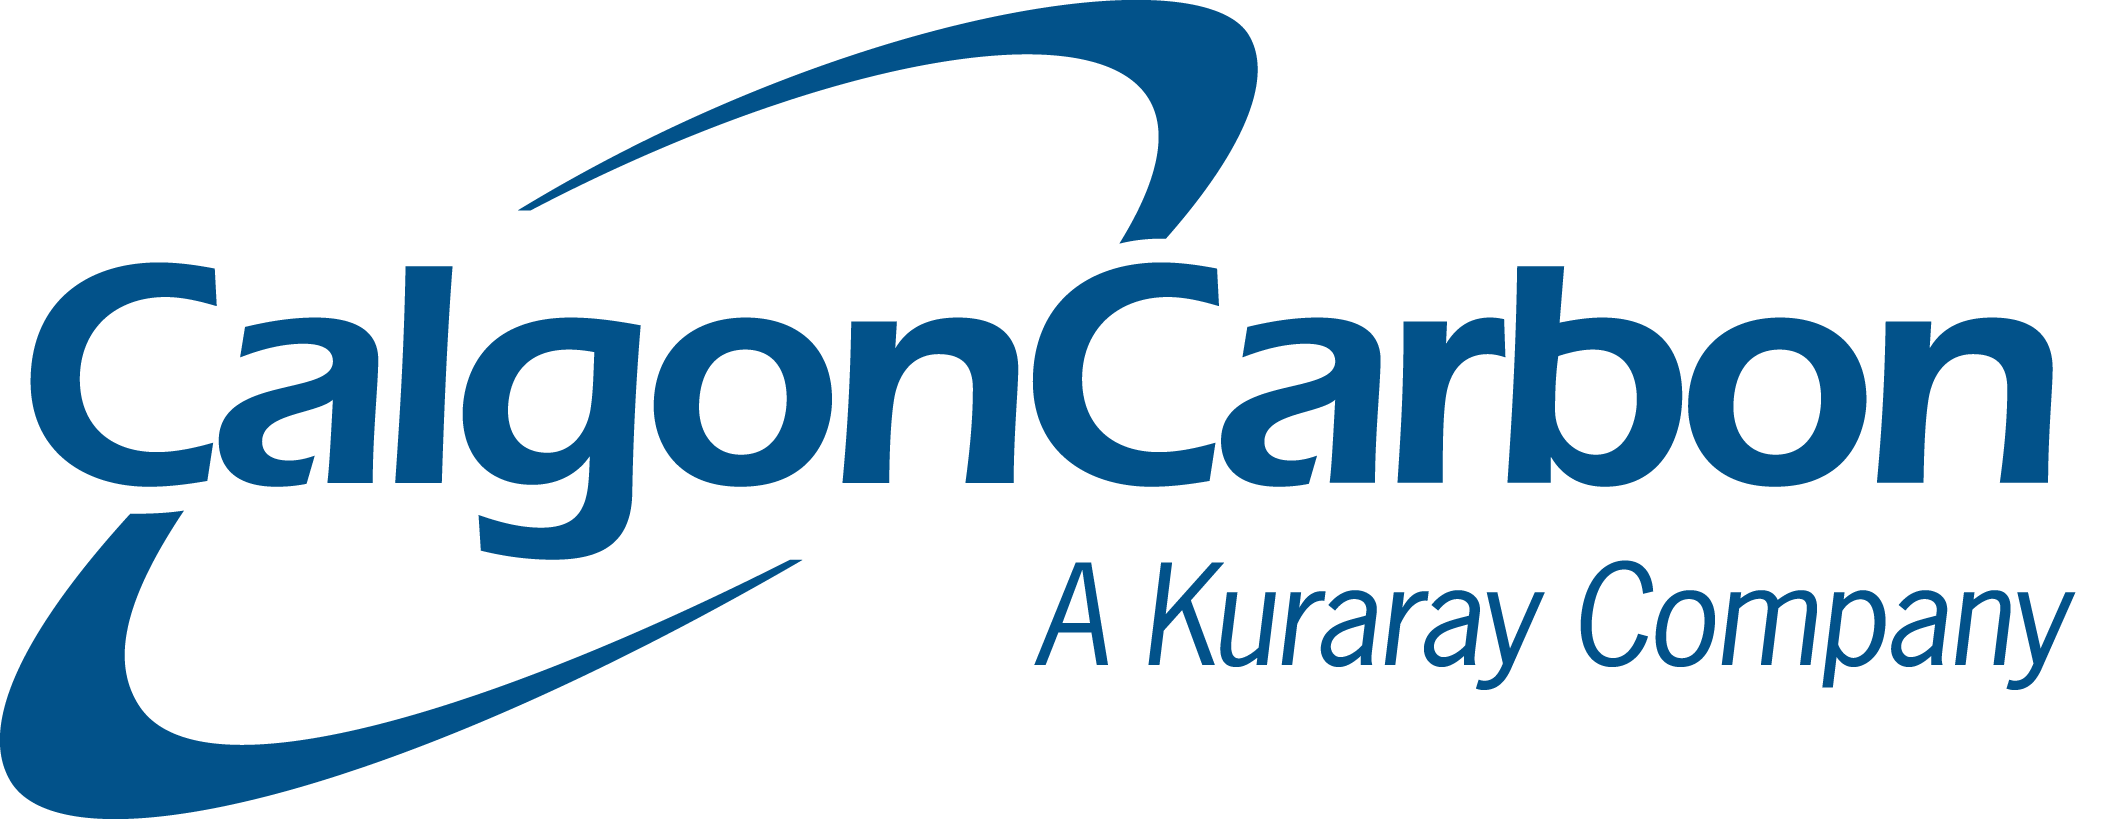 Calgon Carbon, a Kuraray Company